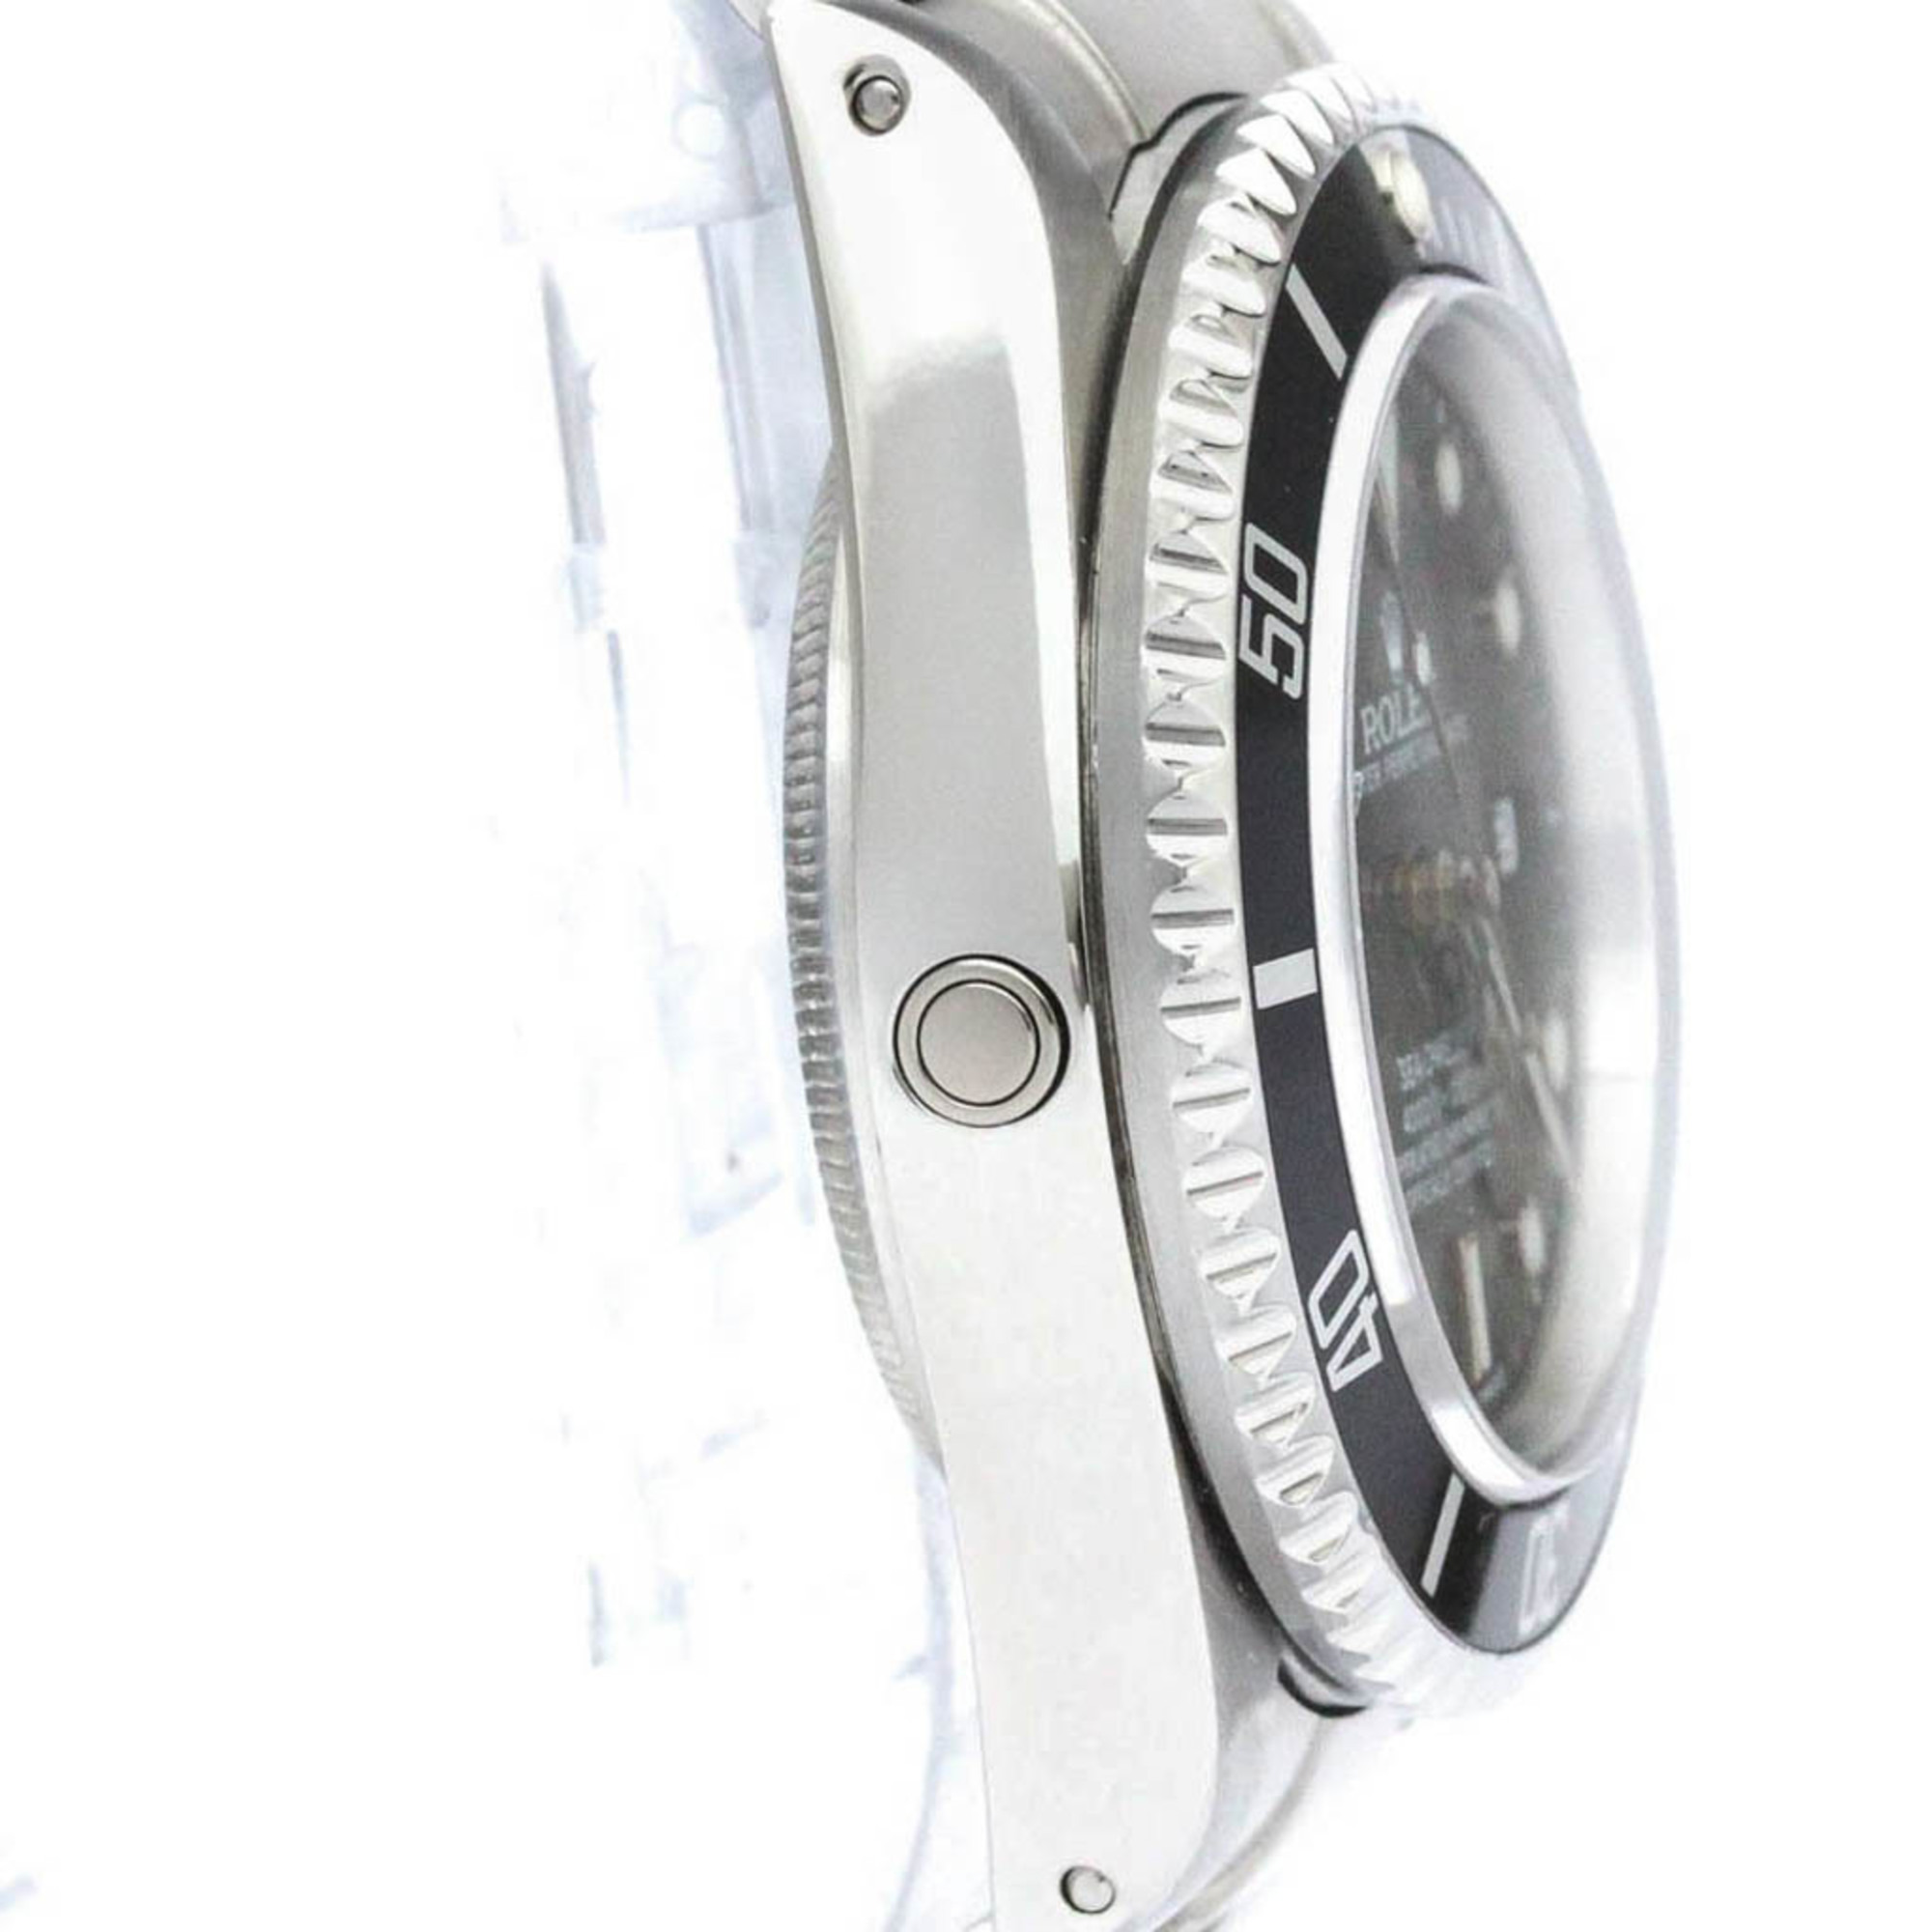 ロレックス (ROLEX) シードゥエラー ステンレススチール 自動巻き メンズ 時計 16660 (外装仕上げ済み) 【中古】